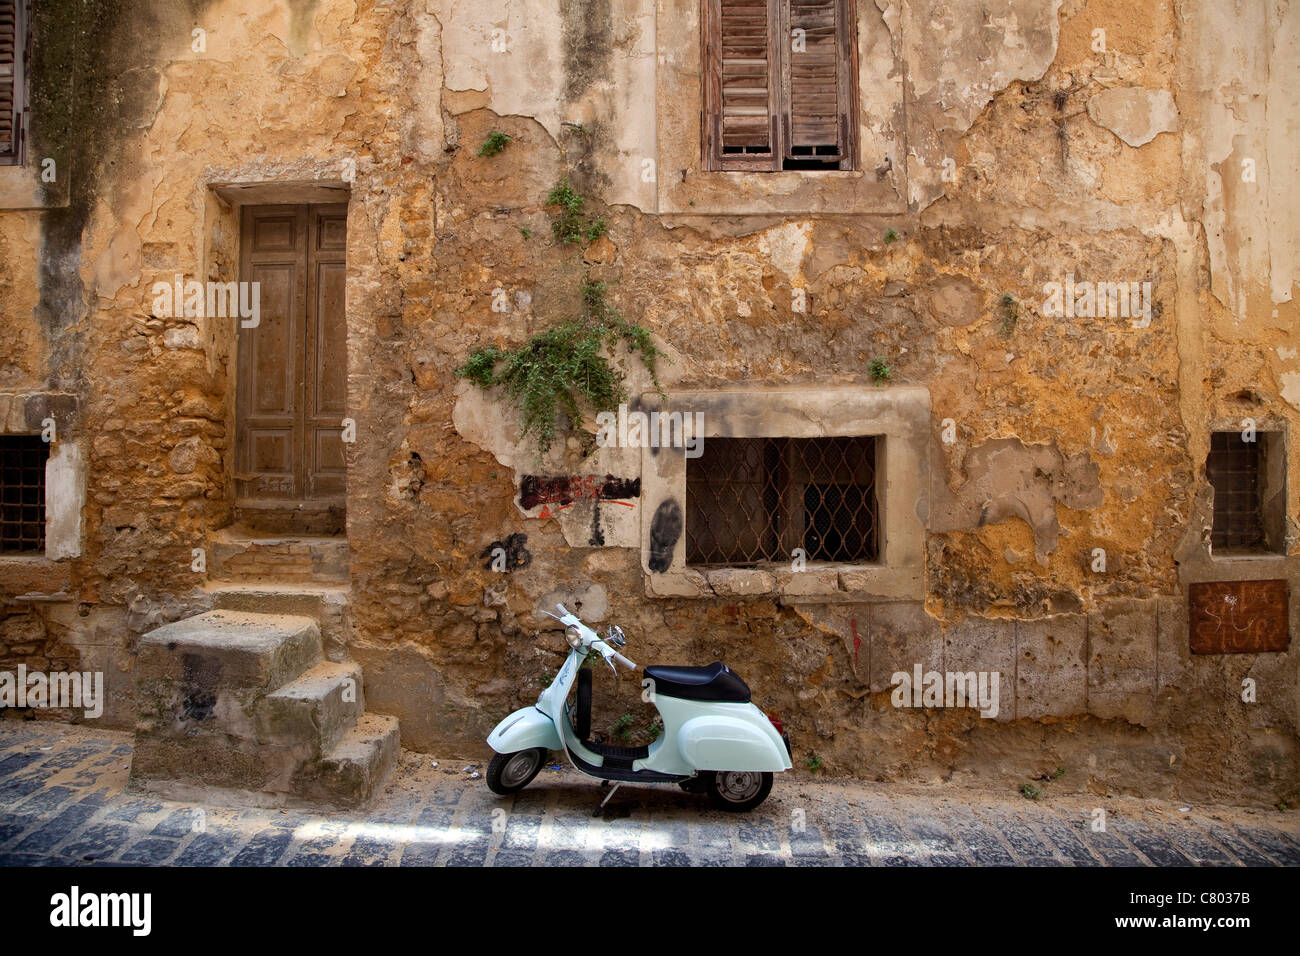 Vieux Vespa 50, garé dans la rue de Caltagirone (Sicile, Italie). Vintage Piaggio mobylette moto près de l'ancien bâtiment mur à Sicilia, Italie Banque D'Images